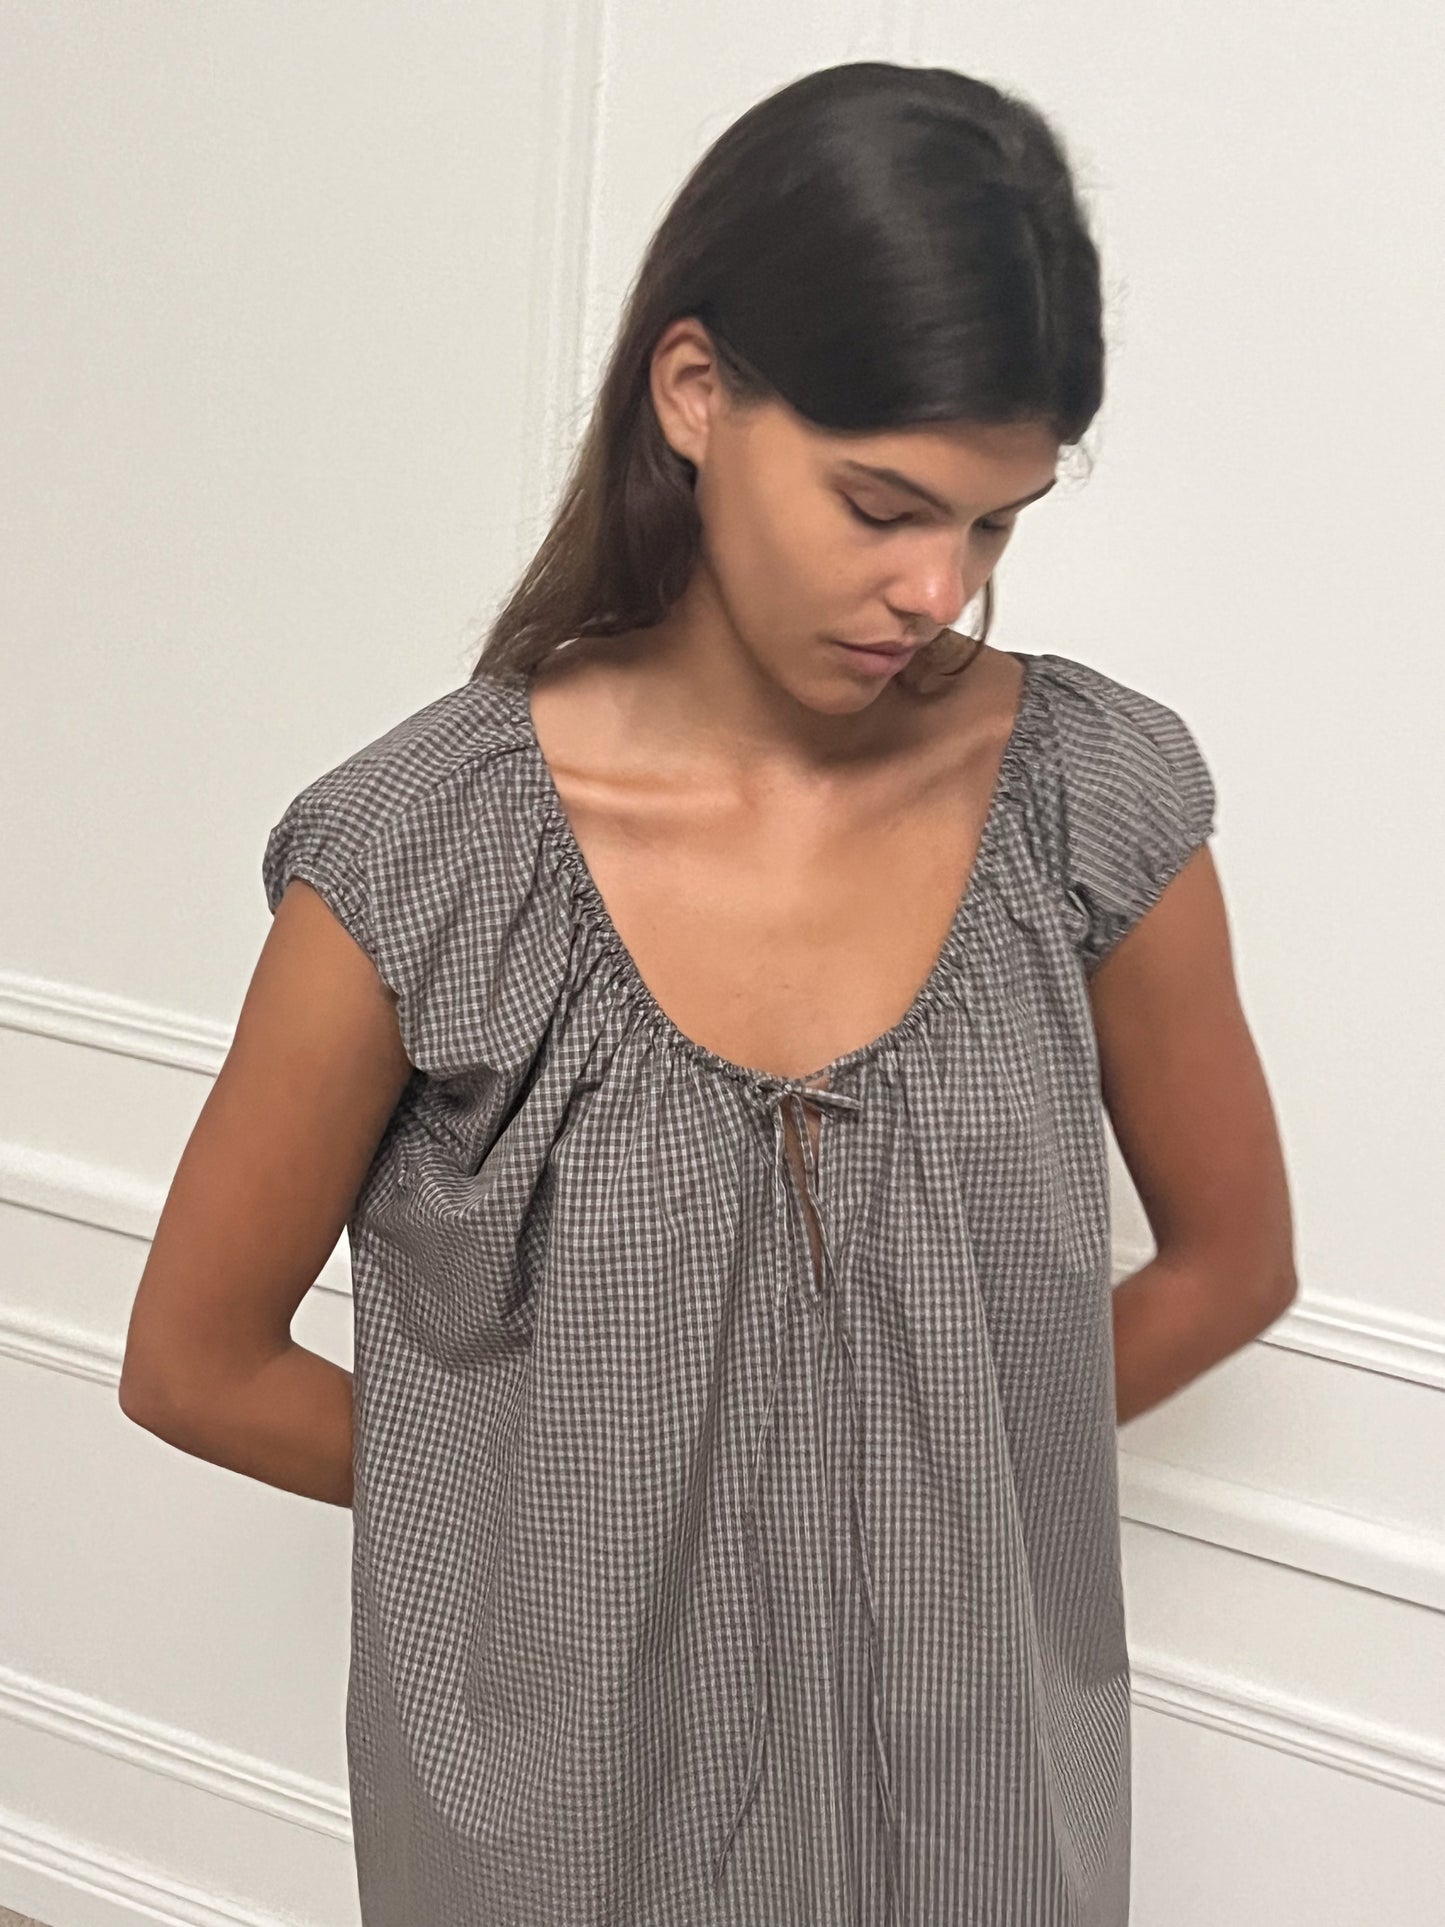 Female model wearing Capped Sleeve Dress - Khaki Check by Deiji Studios against plain background